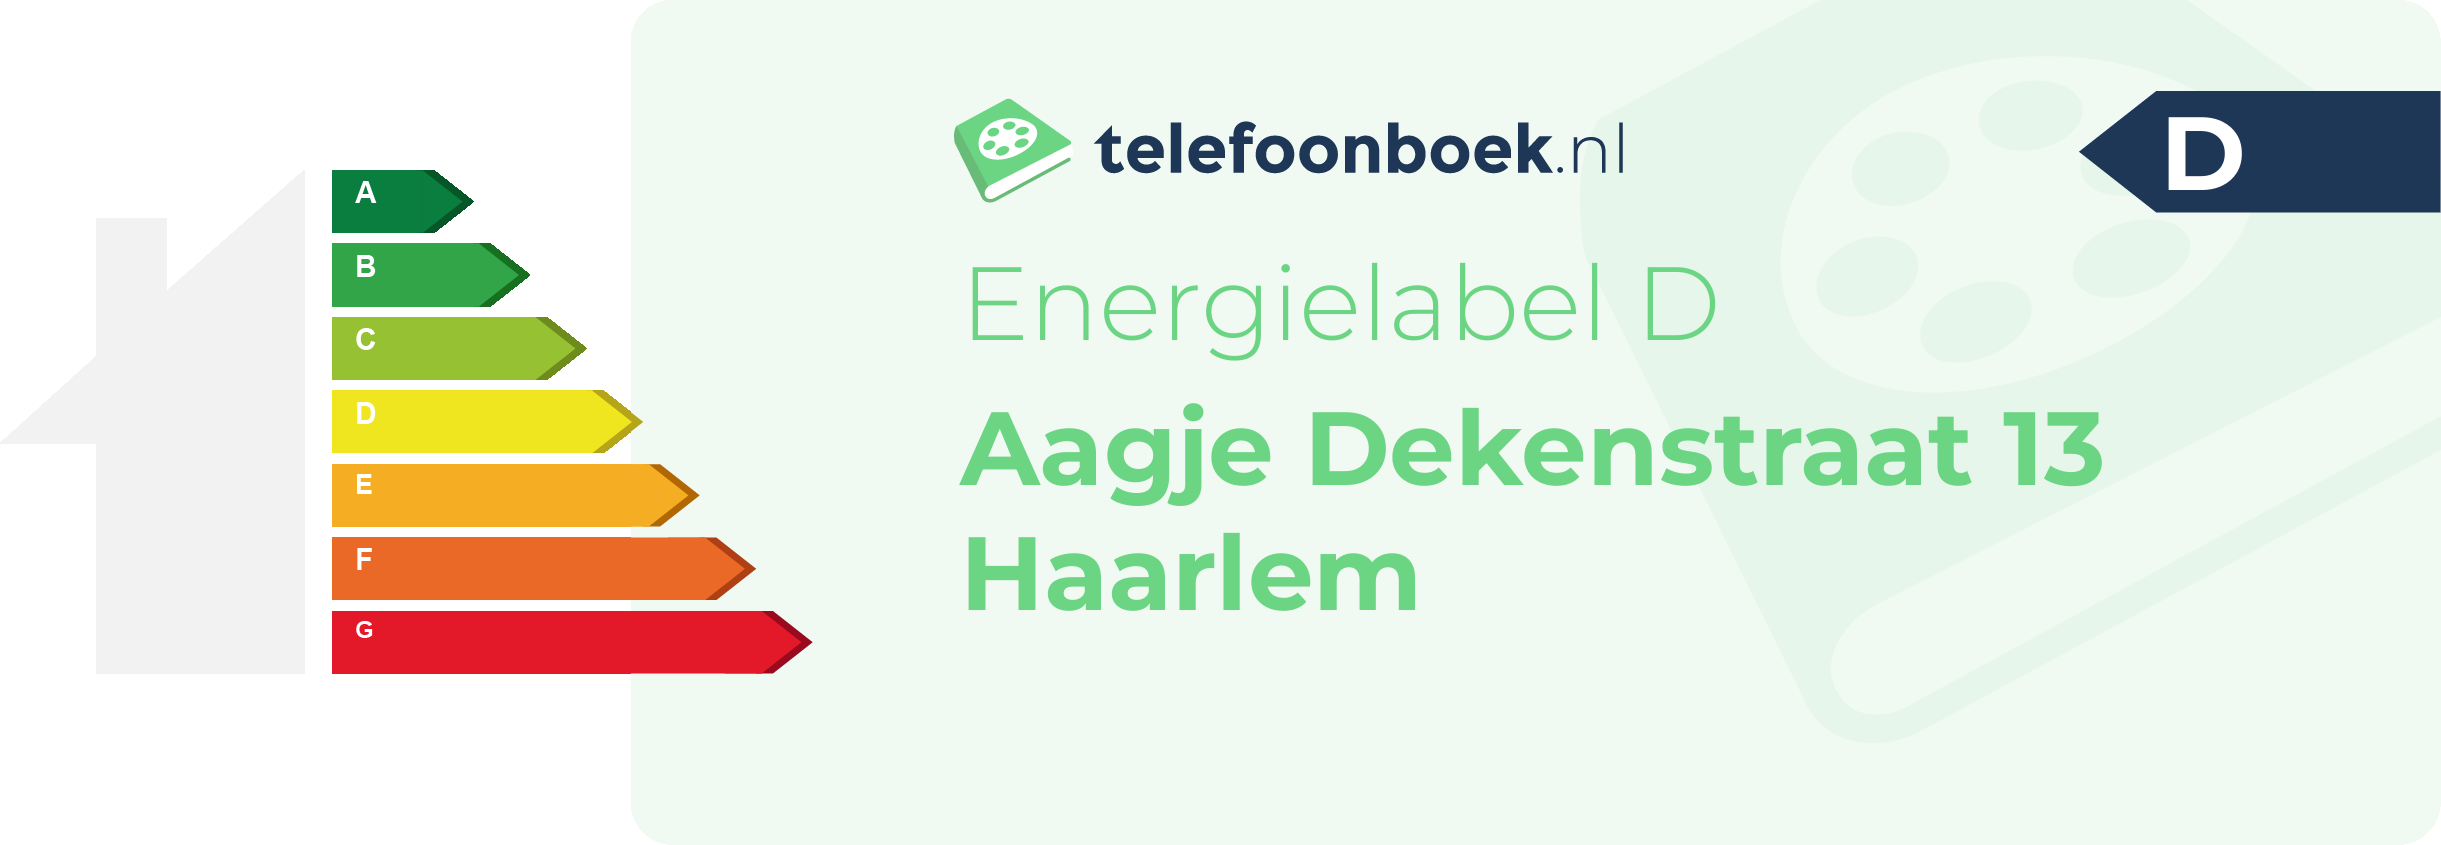 Energielabel Aagje Dekenstraat 13 Haarlem